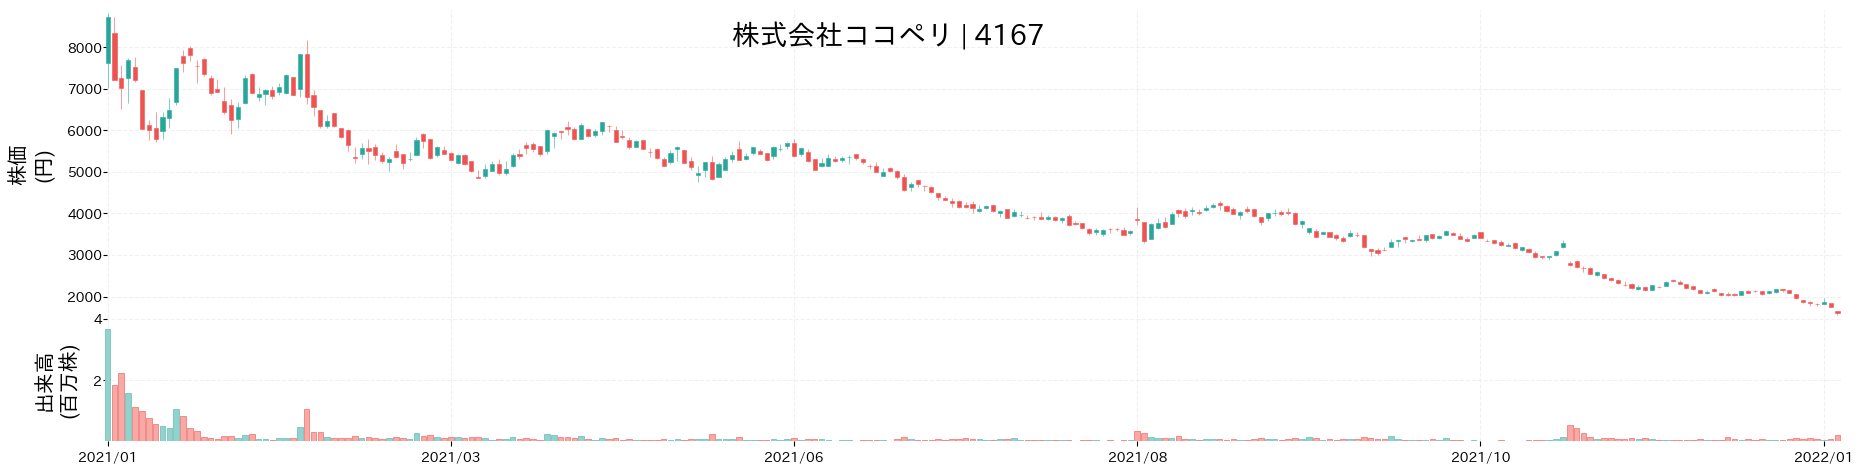 ココペリの株価推移(2021)